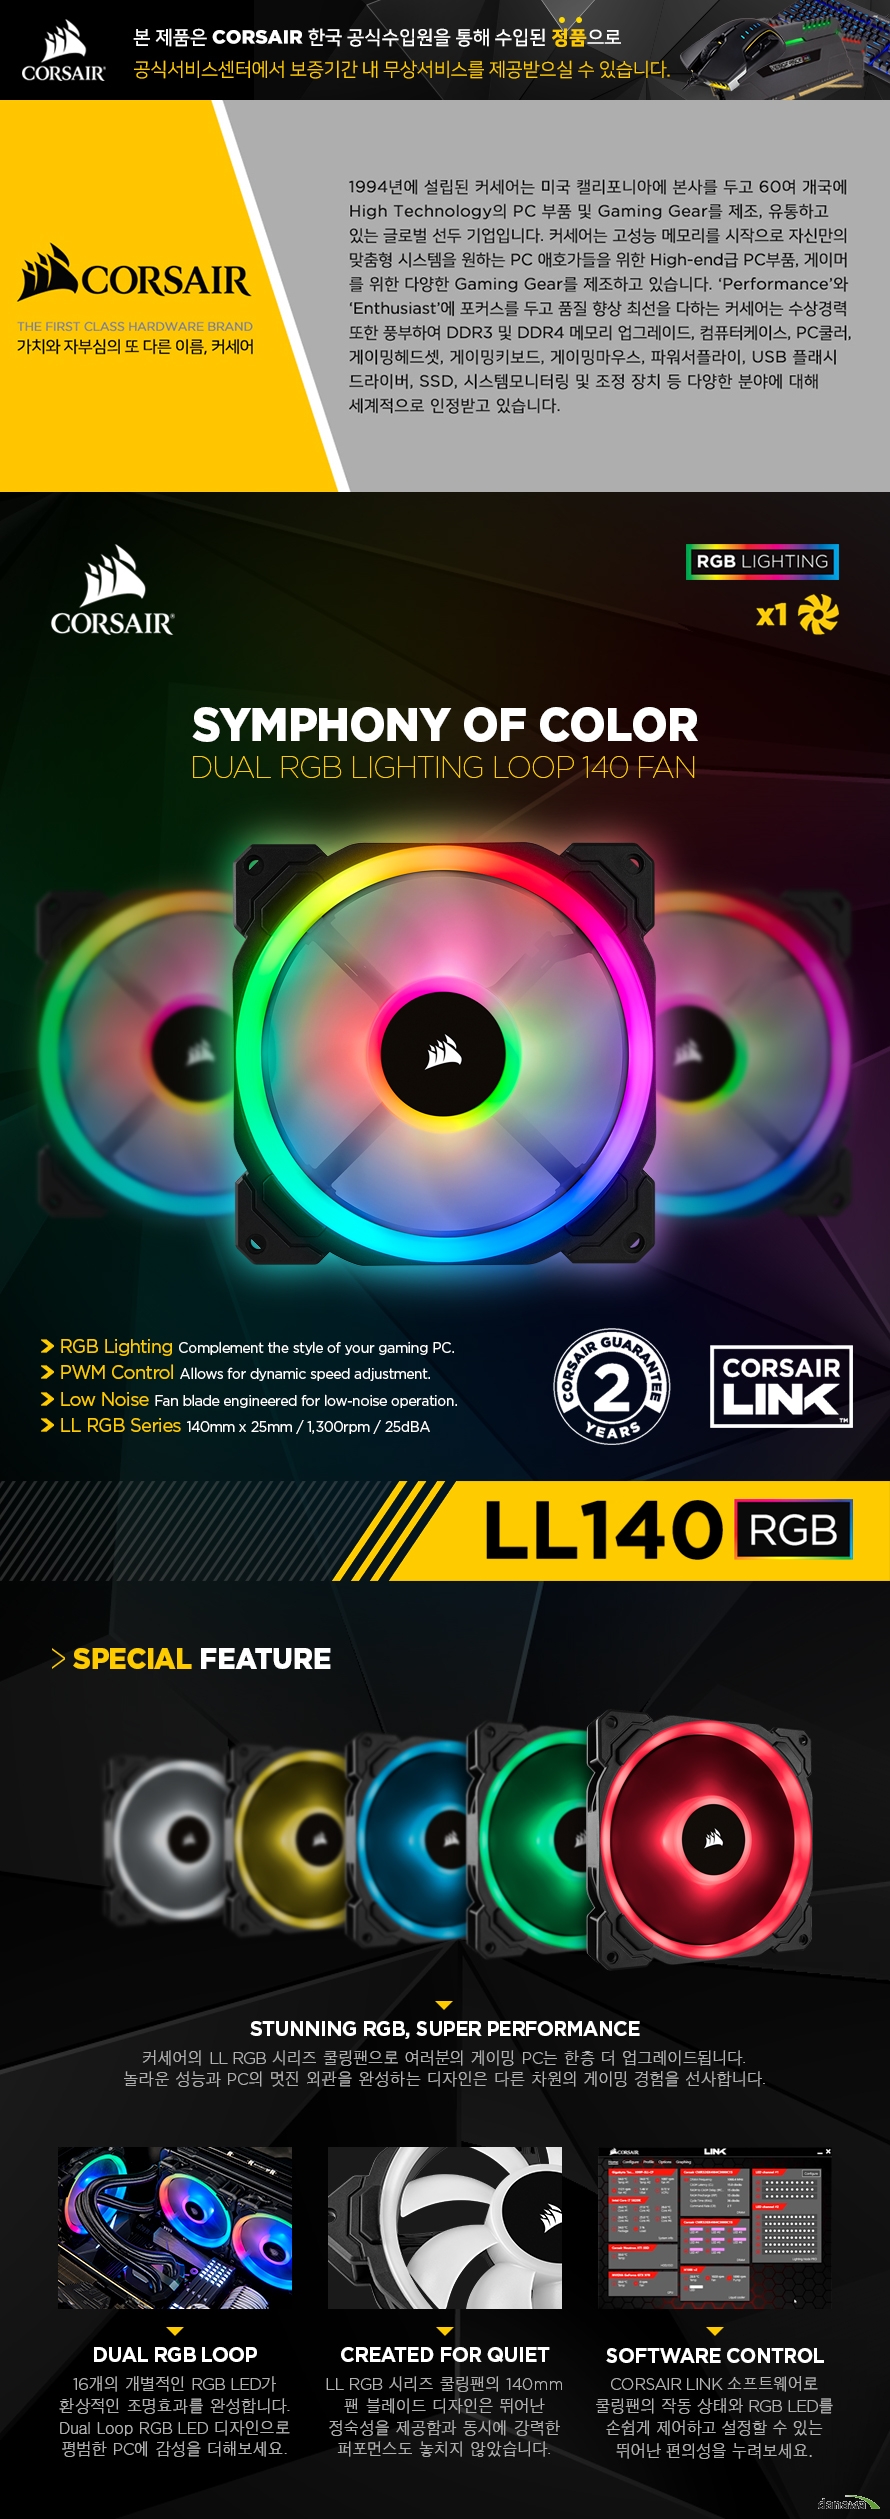 CORSAIR LL 120 RGB 3 pack 커세어의 LL RGB 시리즈 쿨링팬으로 여러분의 게이밍 PC는 한층 더 업그레이드됩니다. 놀라운 성능과 PC의 멋진 외관을 완성하는 디자인은 다른 차원의 게이밍 경험을 선사합니다.